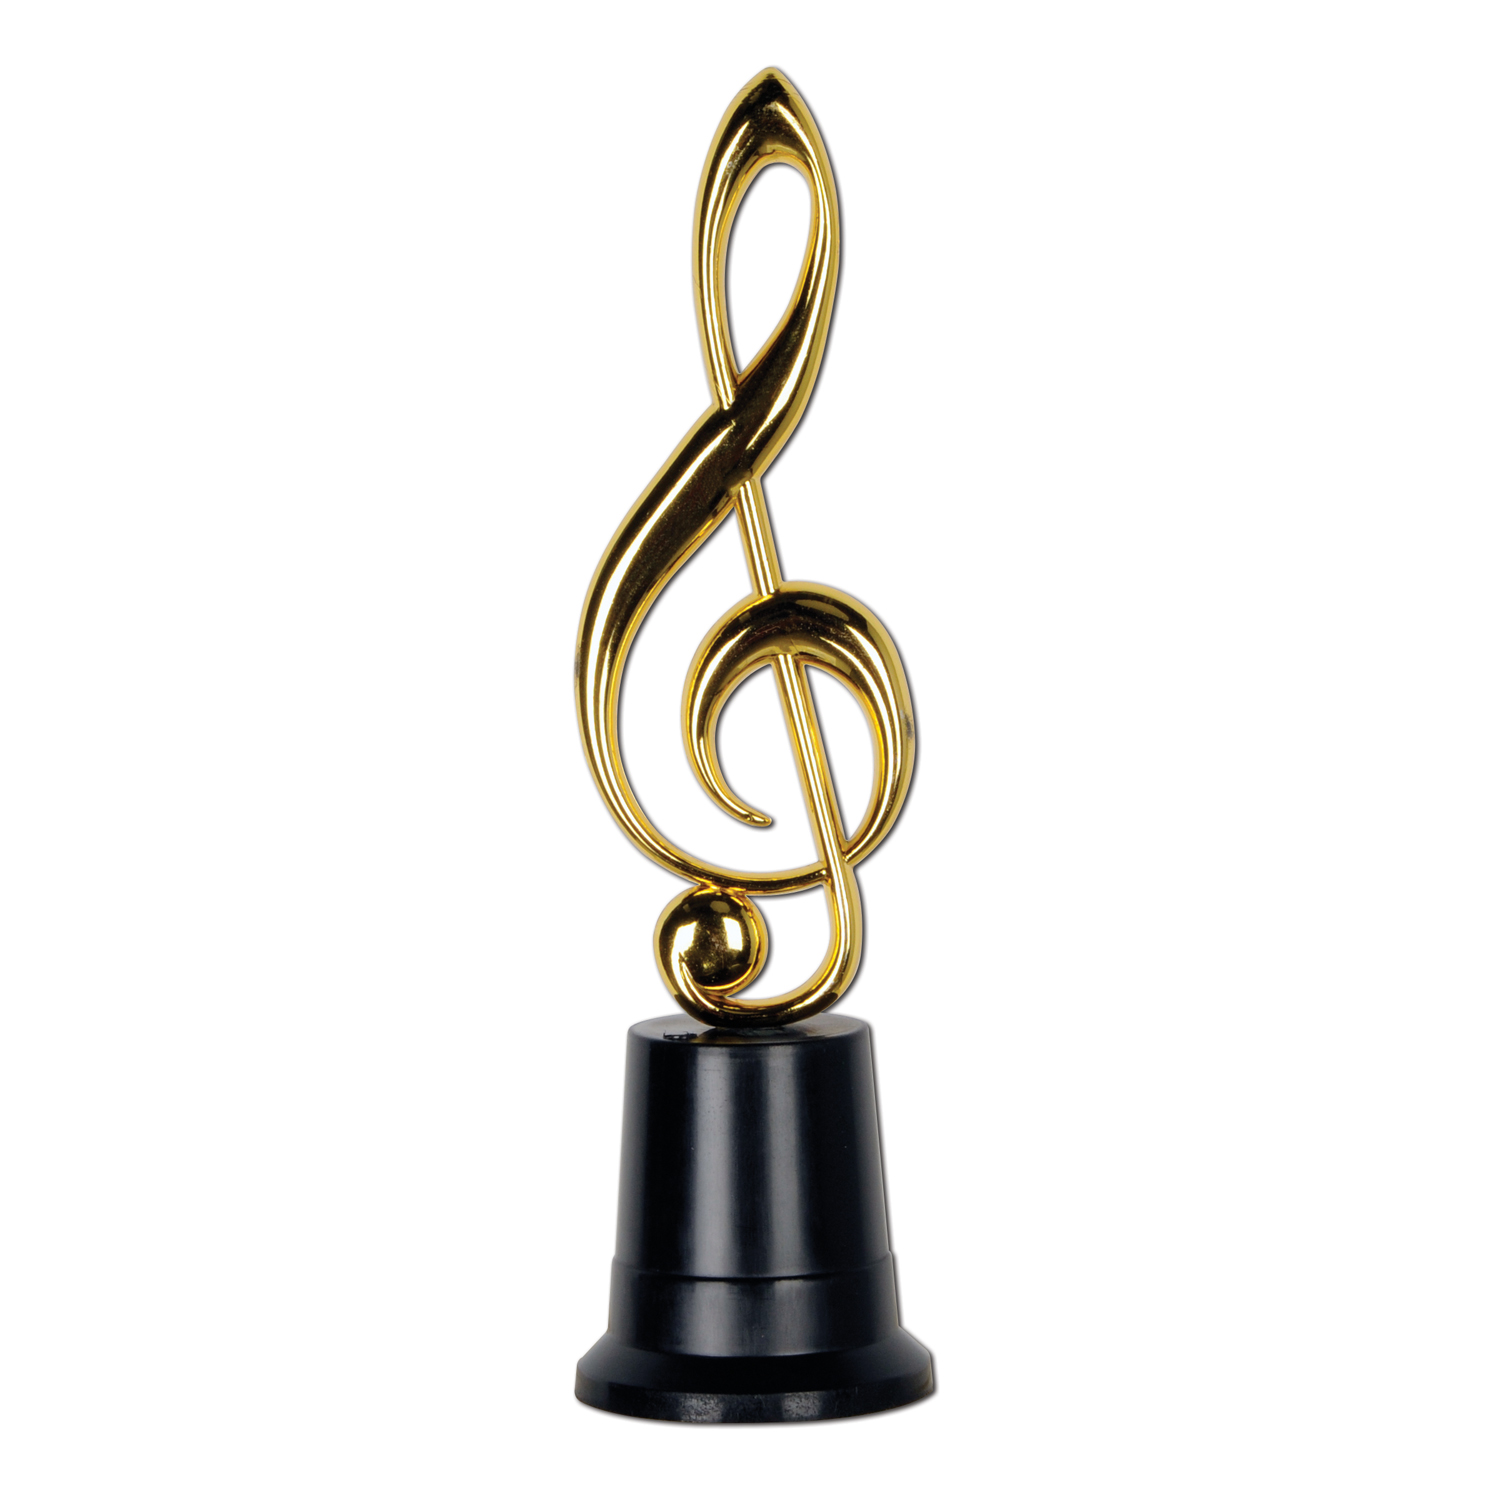 MUSIC Award